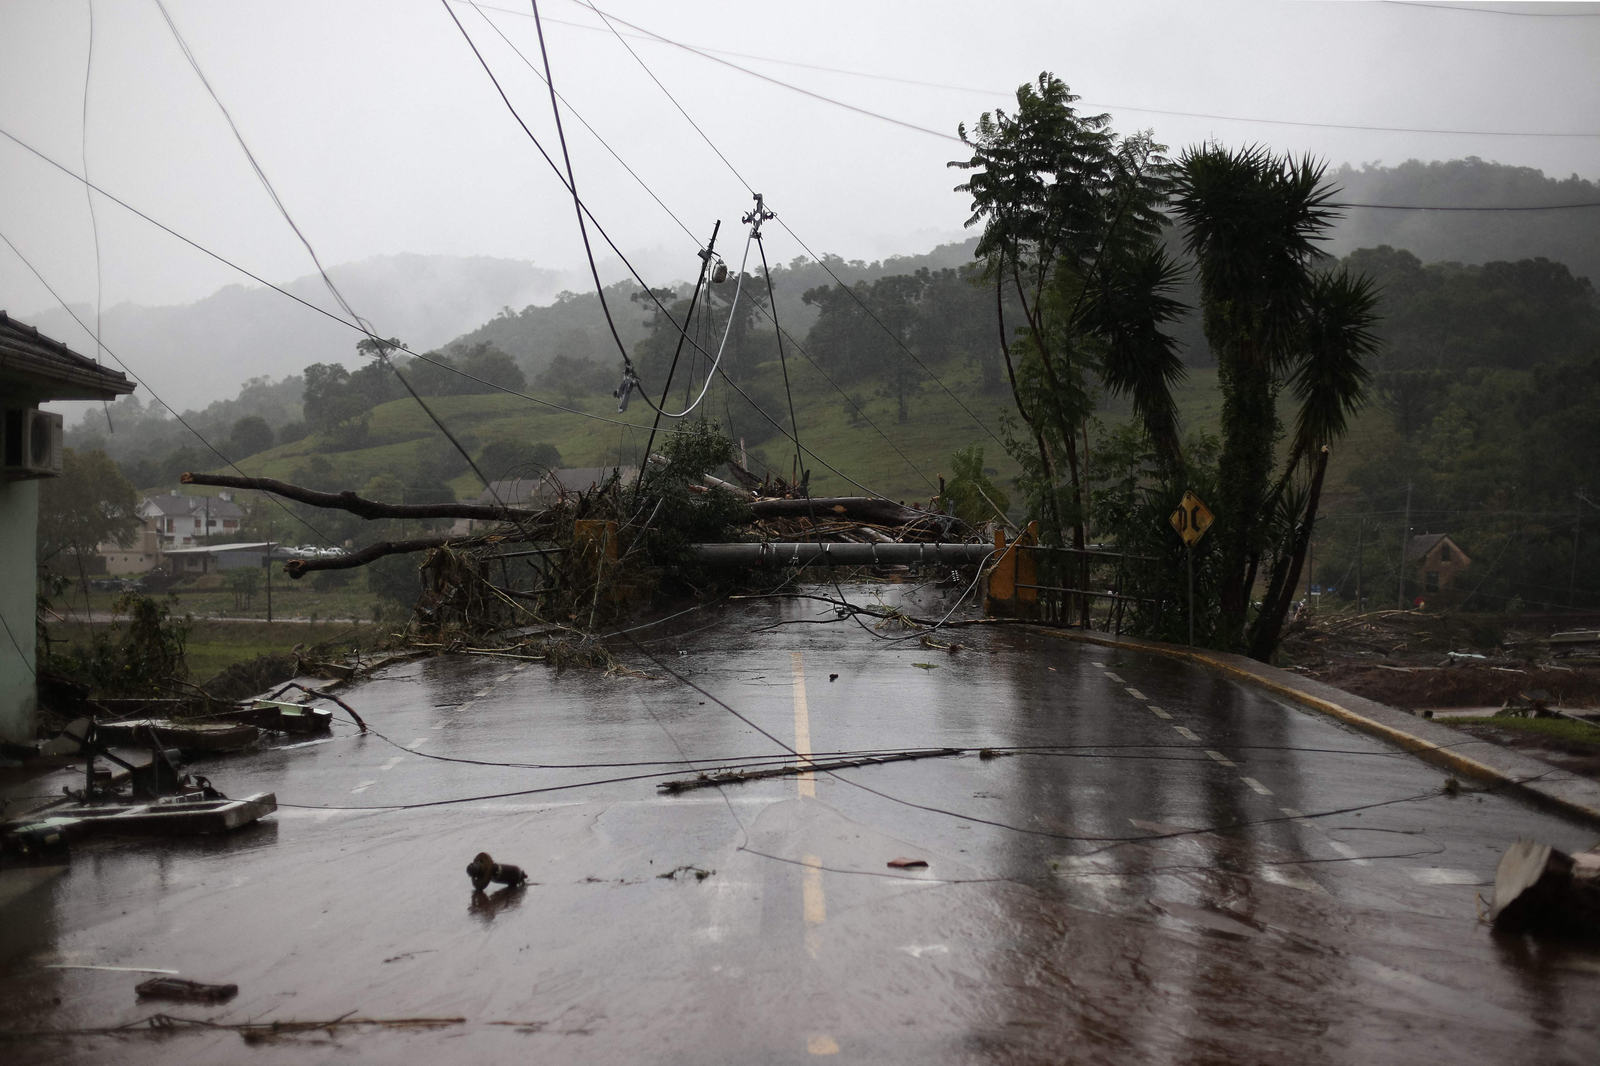 Postes de eletricidade e árvores derrubadas pelo vento e fortes chuvas nas ruas de Sinimbu, na região do Vale do Rio Pardo, Rio Grande do Sul, Brasil. — Foto: Anselmo Cunha/AFP